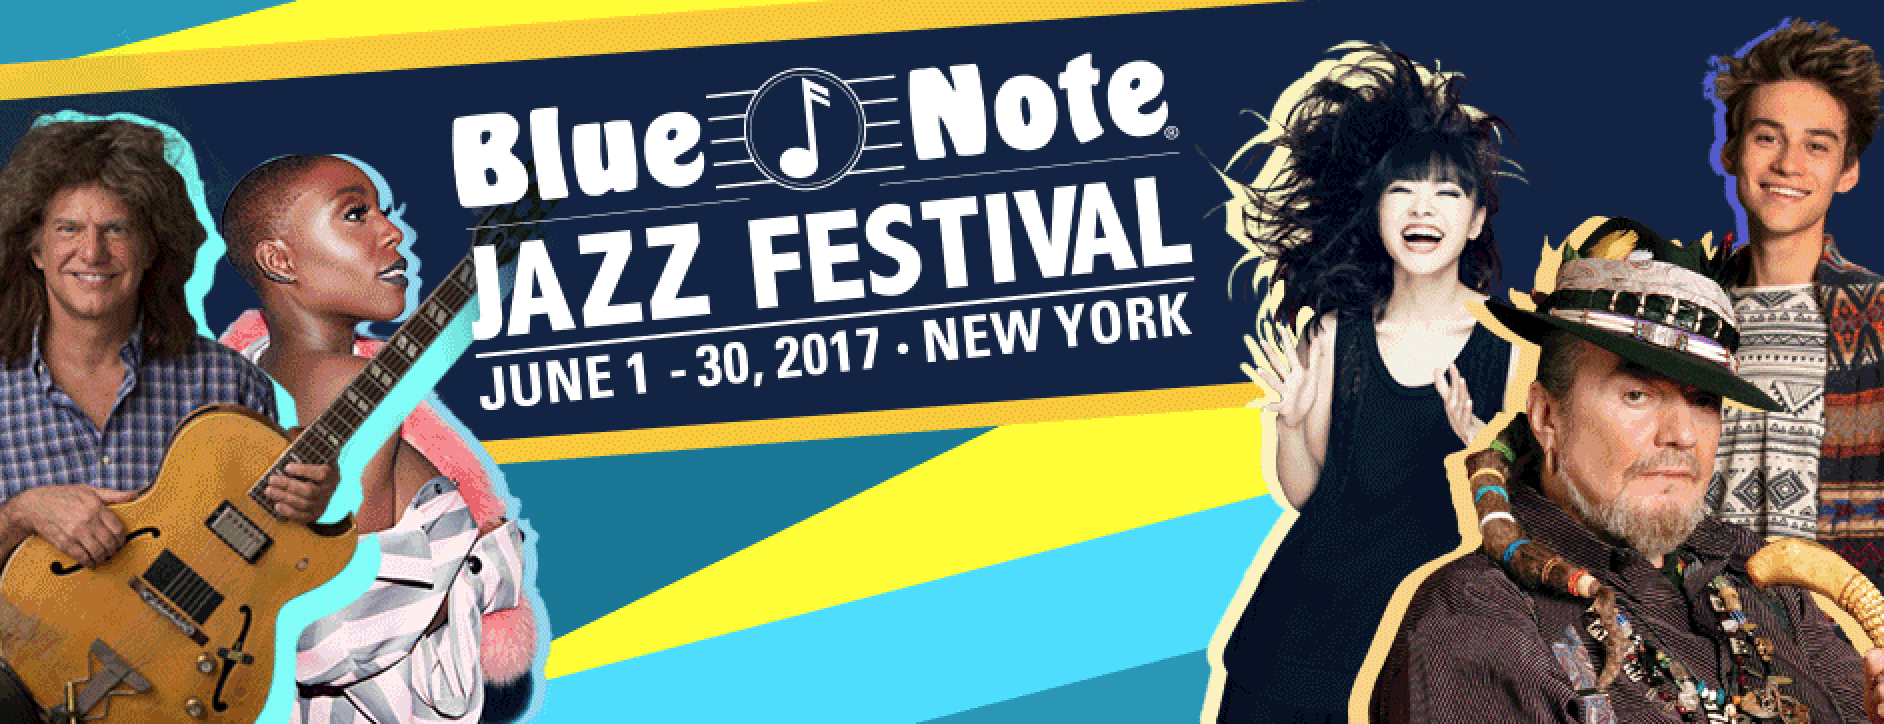 Blue Note Jazz Festival Announces Lineup